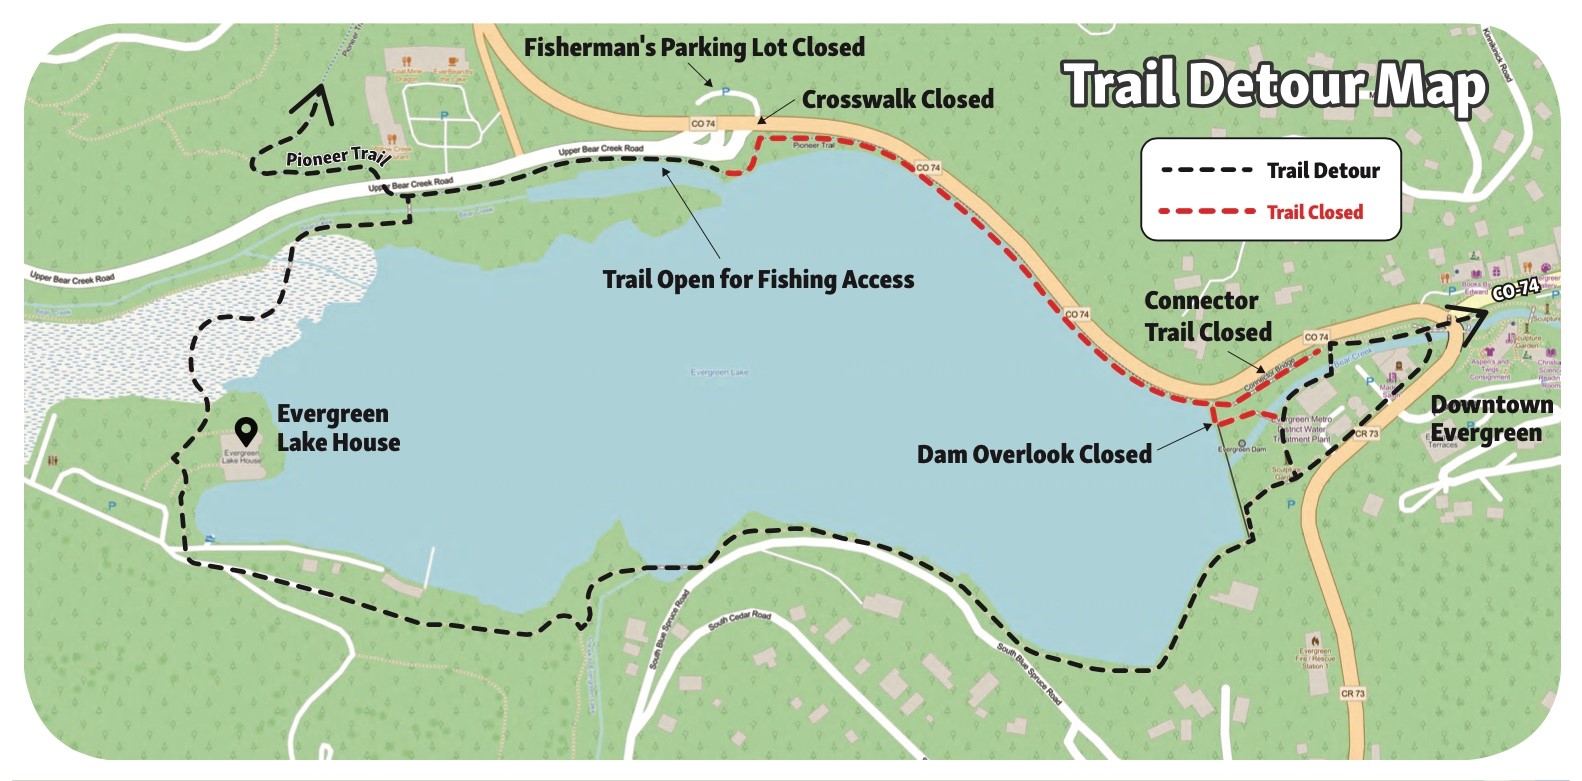 FINAL Trail Detour Map.jpg detail image